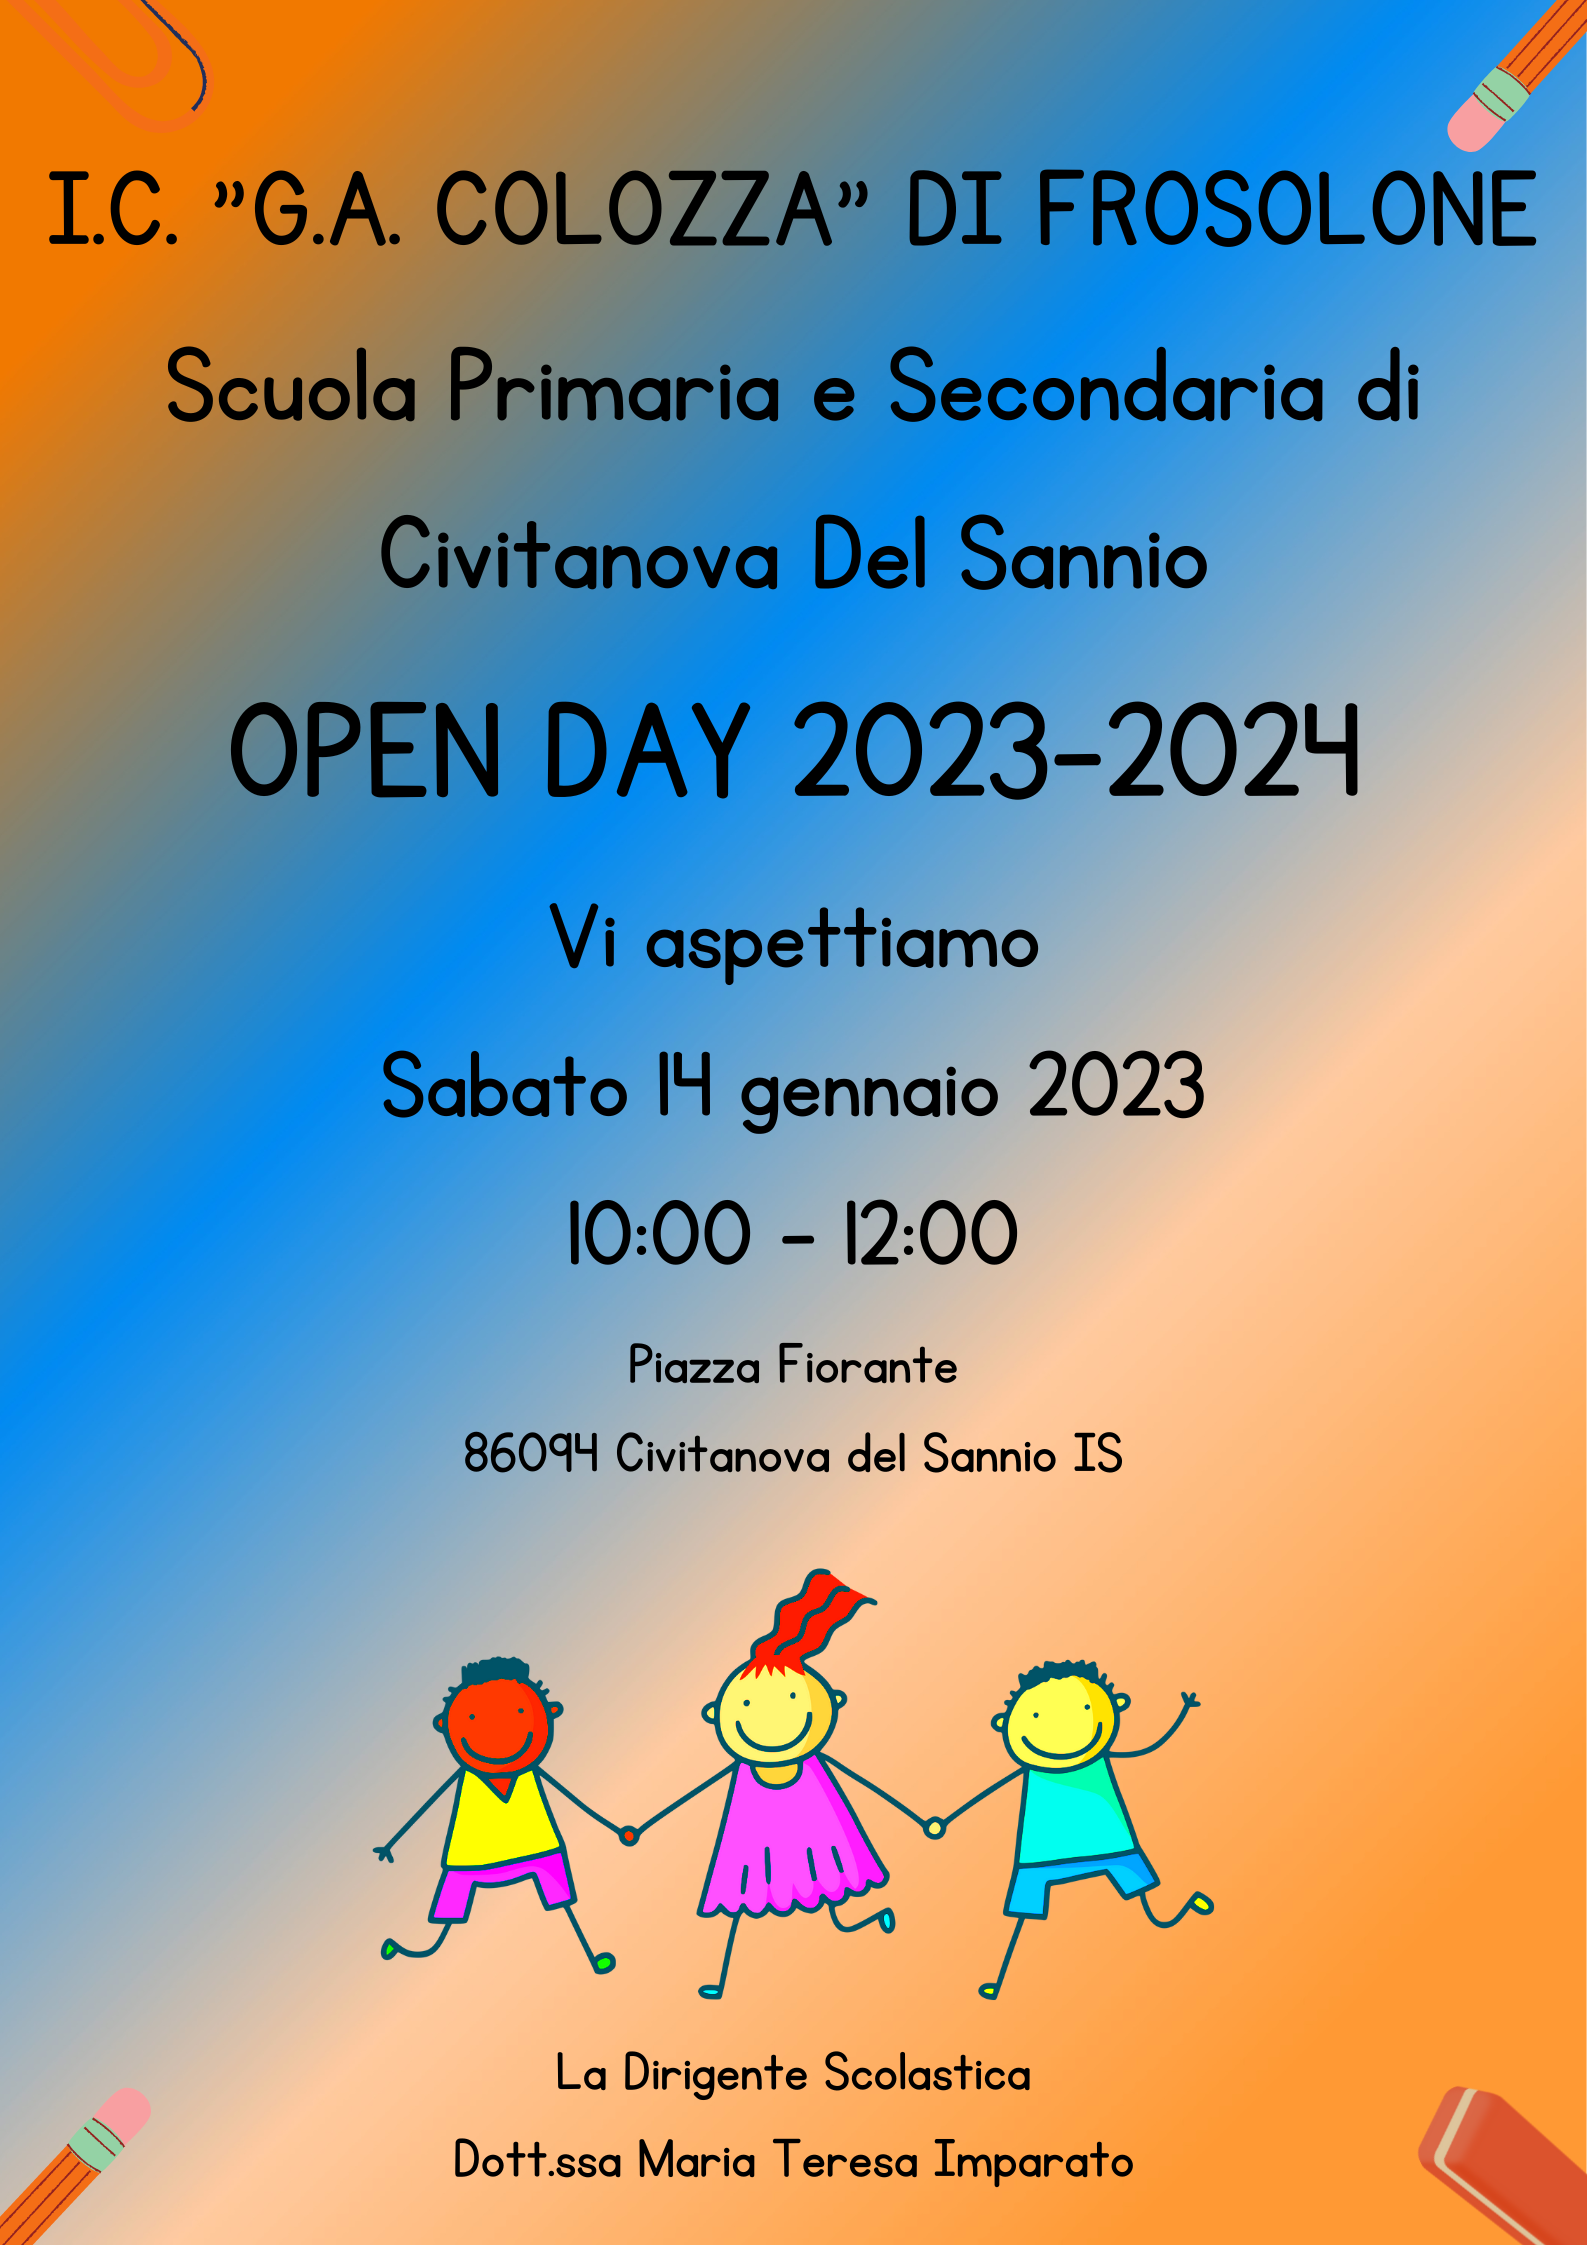 Al momento stai visualizzando Open Day Scuola Primaria e Secondaria di Civitanova Del Sannio.